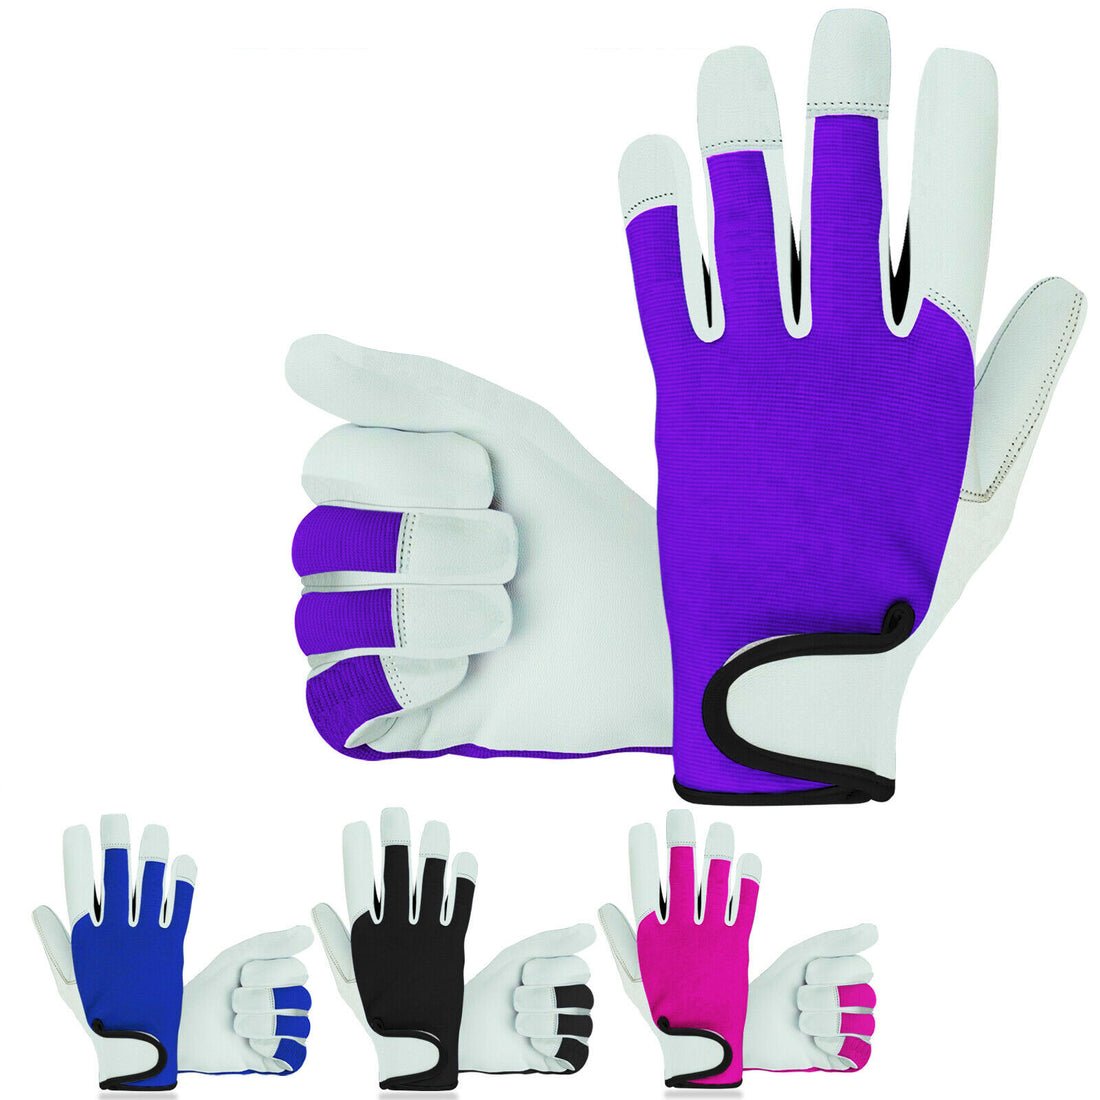 Ladies / Mens Leather Gardening Gloves Thorn Proof Garden Work Gloves Non Slip